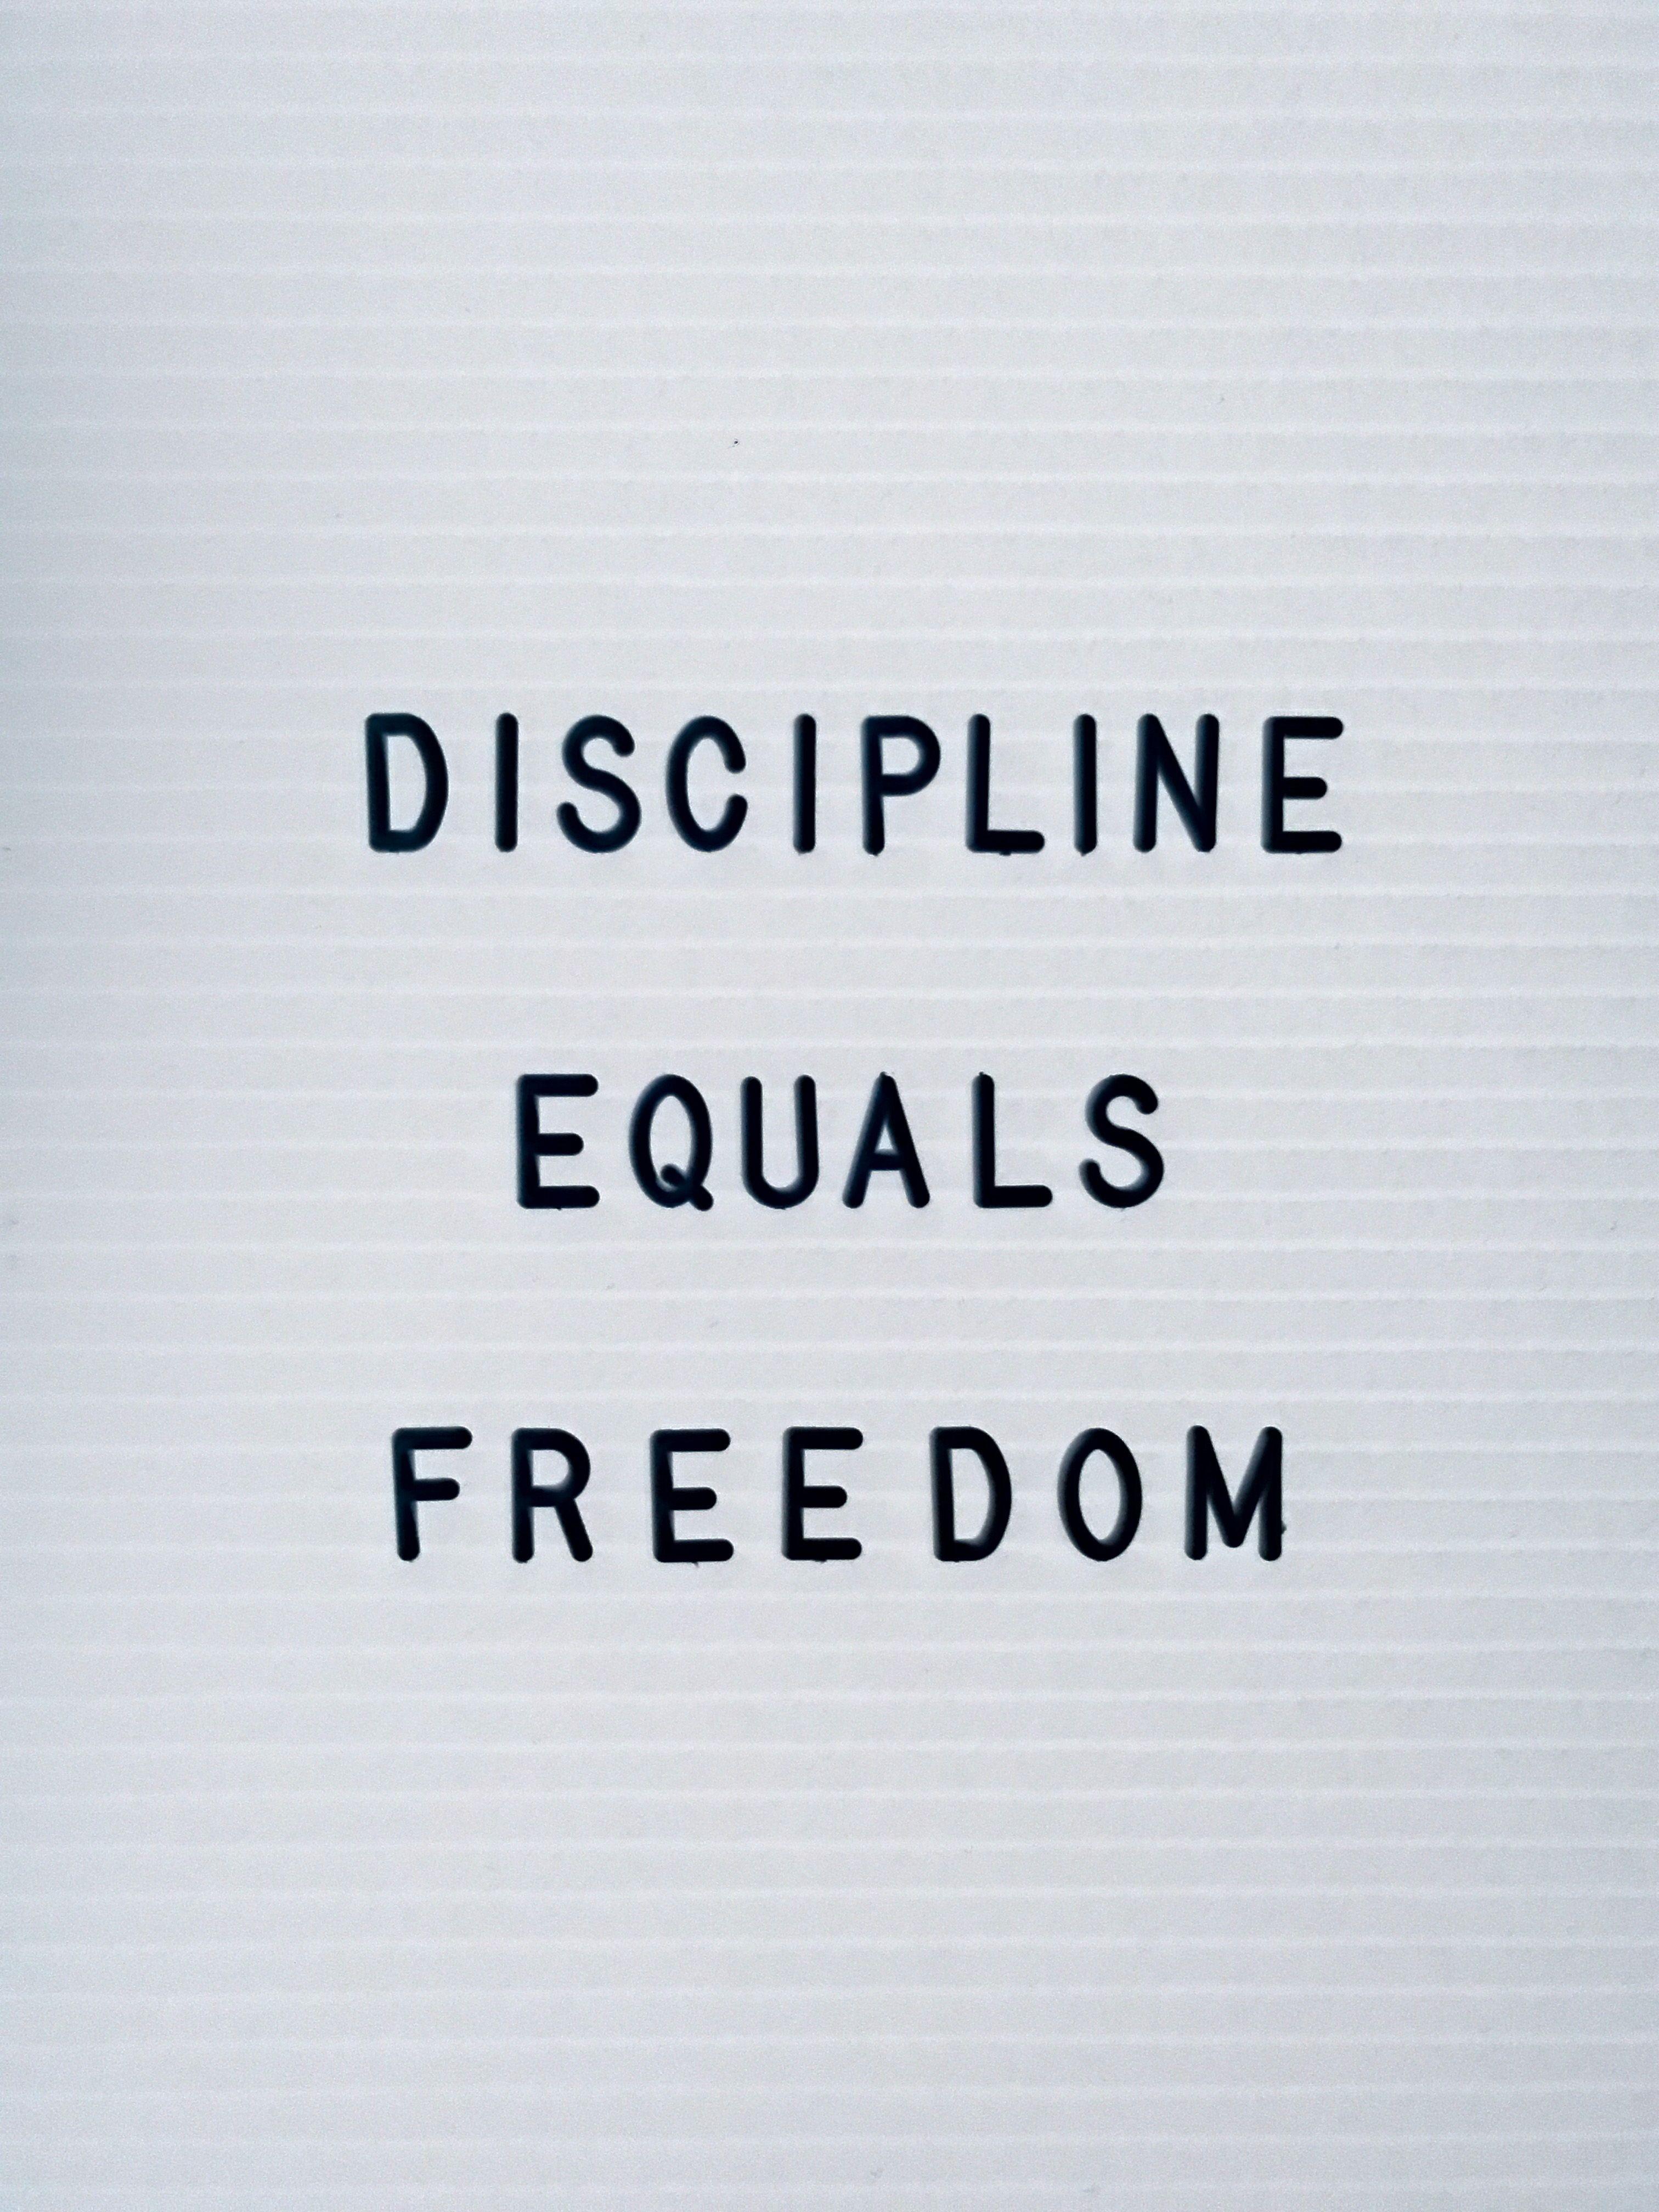 Discipline quote mobile wallpaper - VIVE CON STYLE